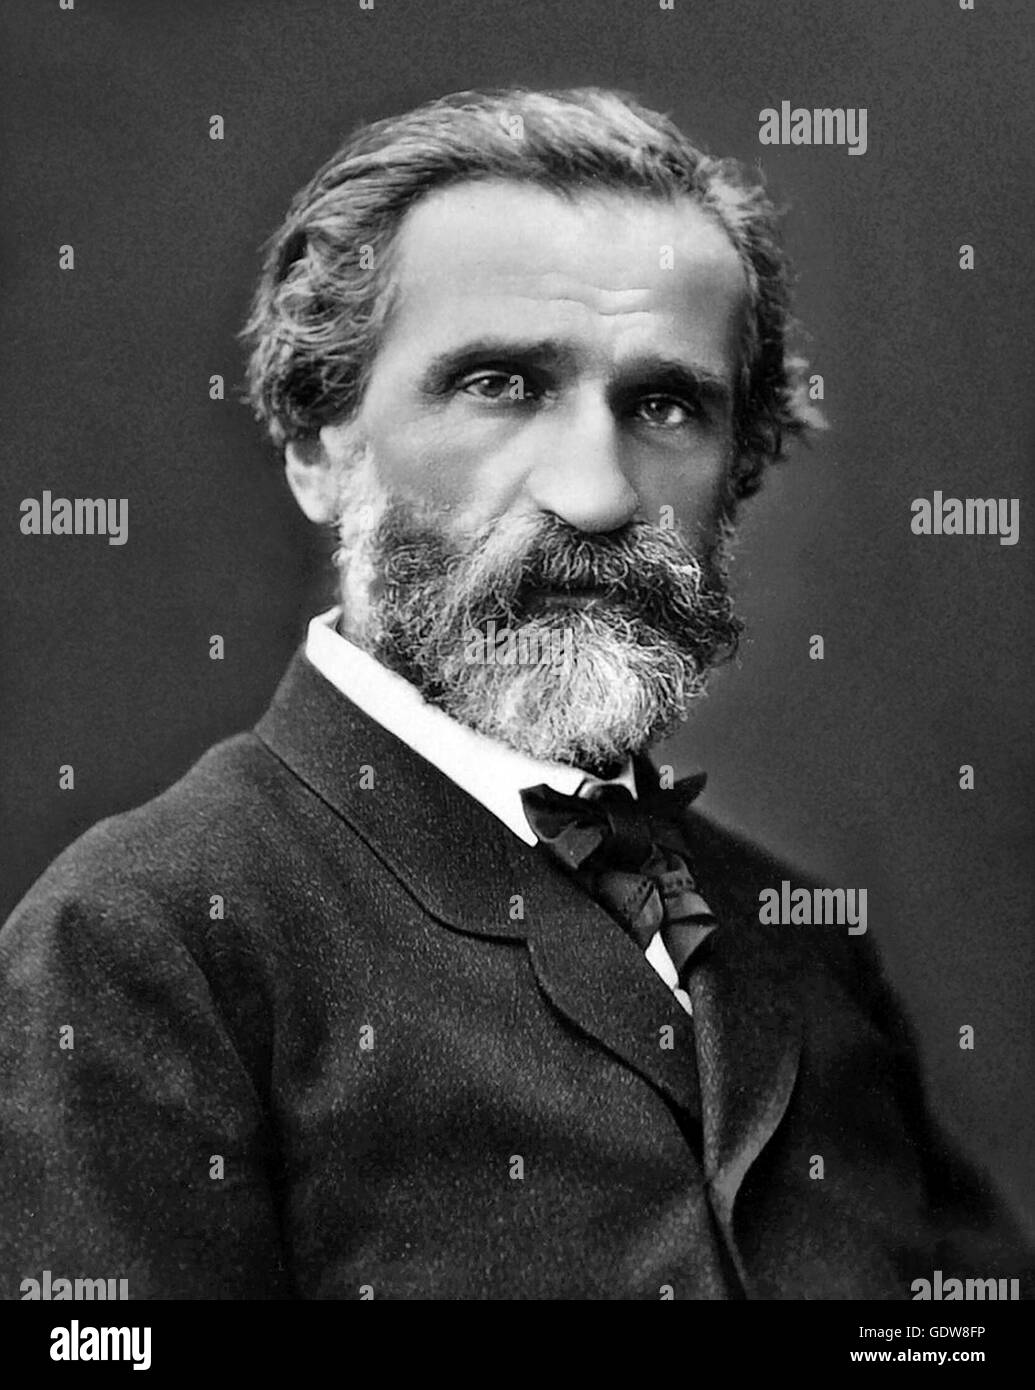 Giuseppe Verdi. Portrait of the Italian composer, Giuseppe Fortunino Francesco Verdi (1813-1900), by Ferdinand Mulnier, c.1870. Stock Photo